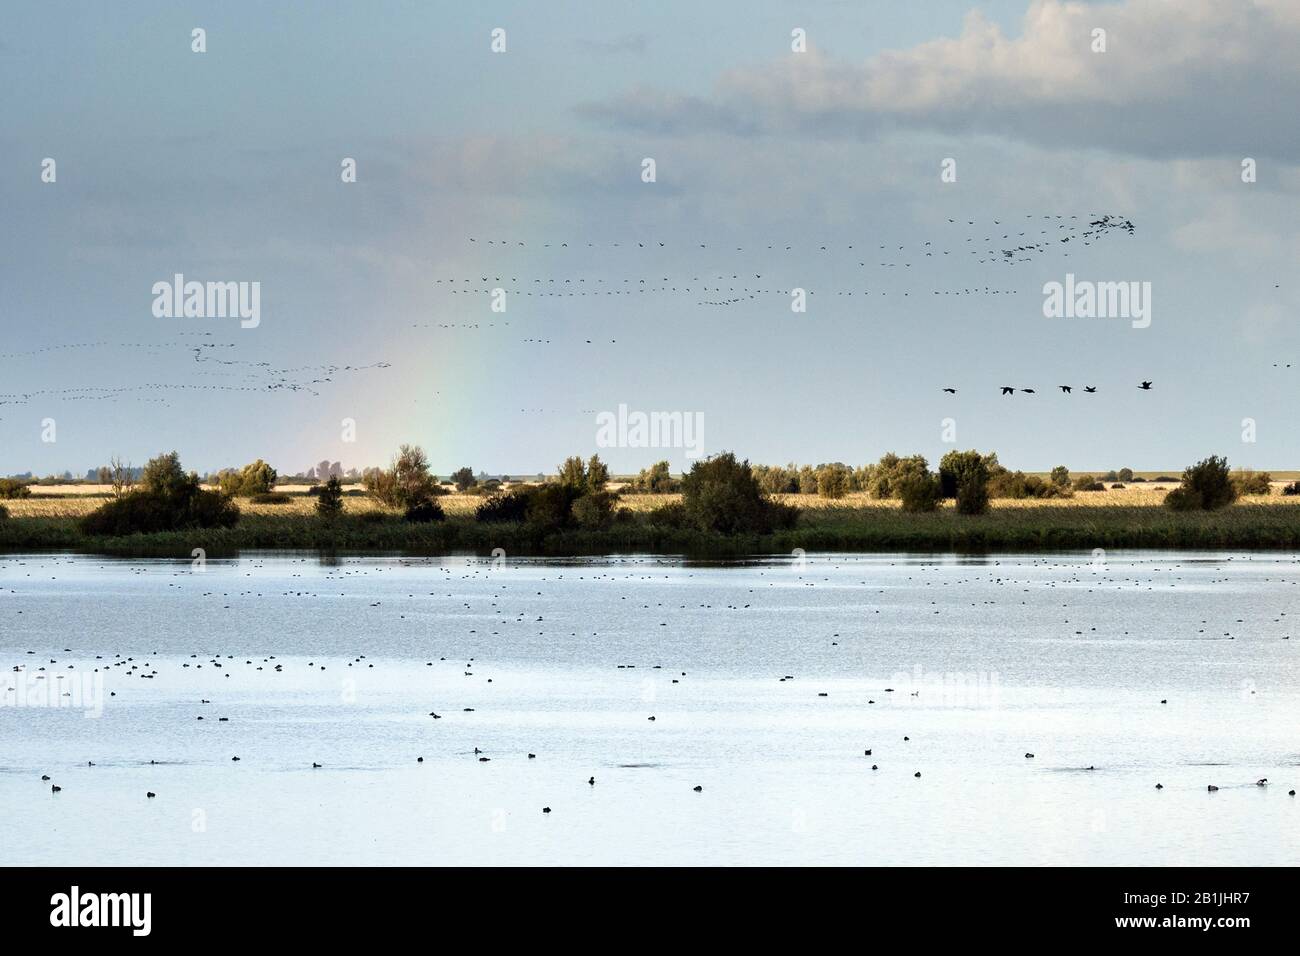 Migration d'oiseaux sur un lac avec un arc-en-ciel, Pays-Bas, Flevoland, Oostvaardersplassen Banque D'Images